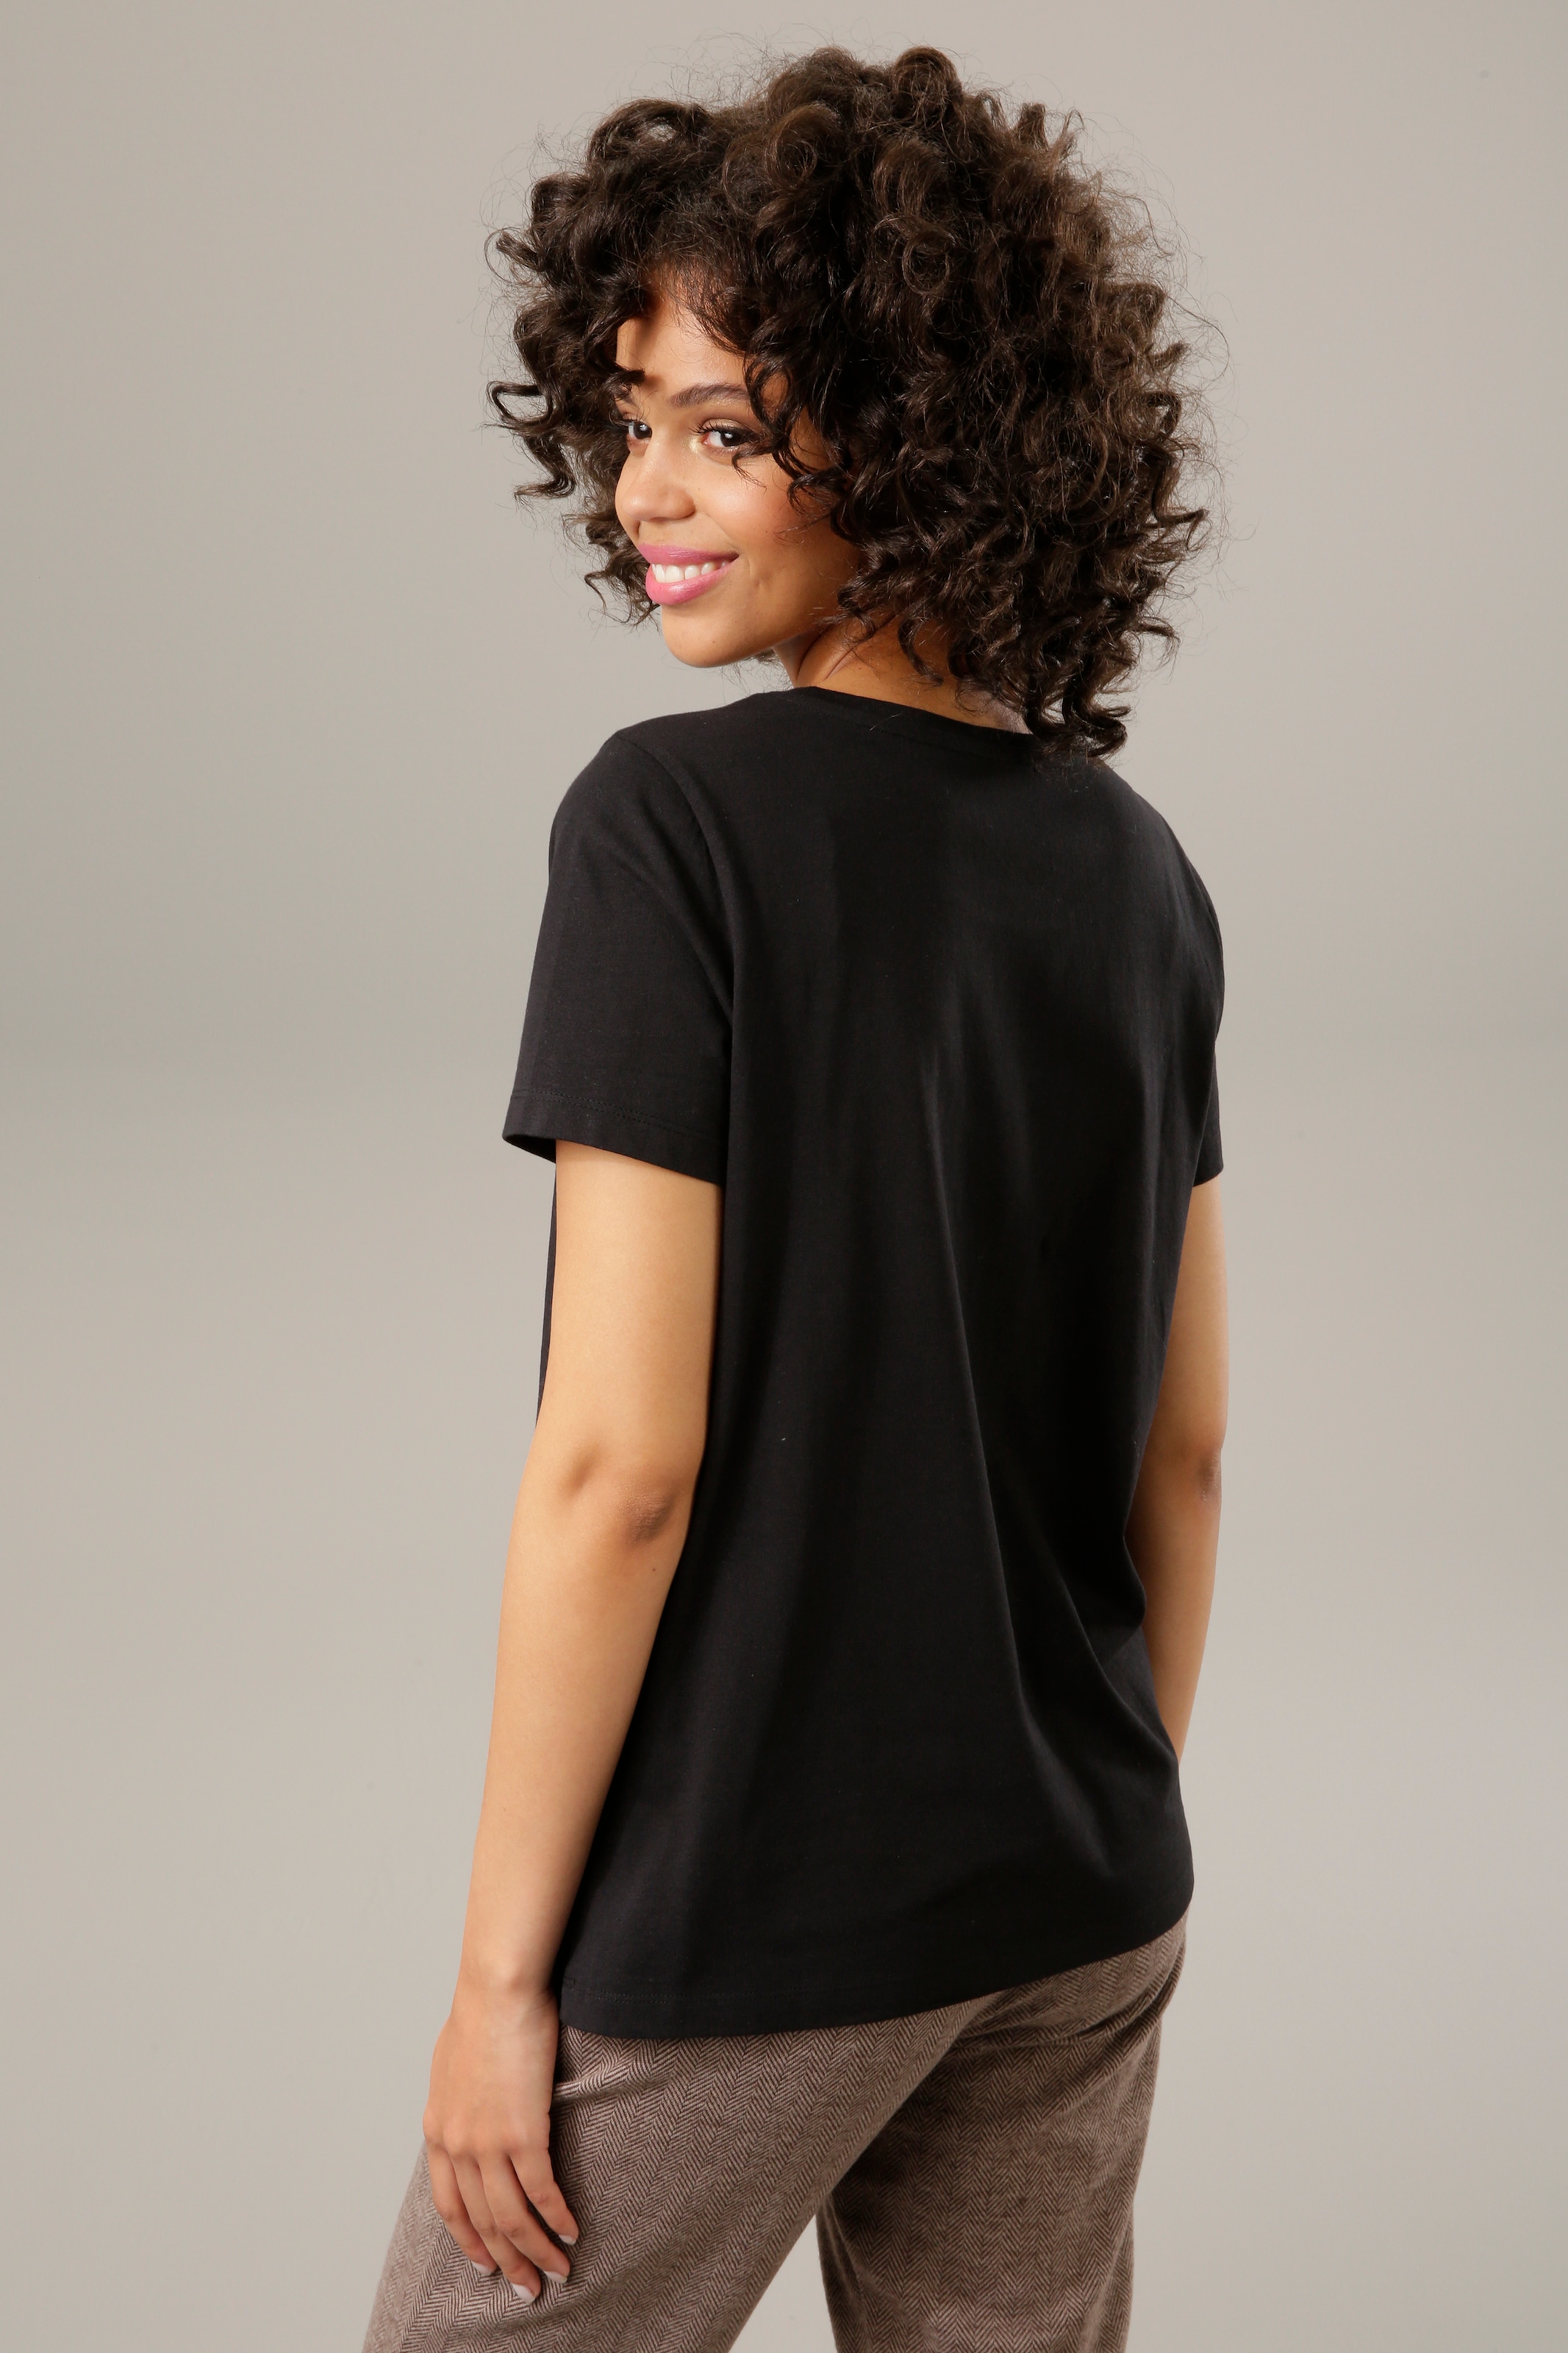 Aniston CASUAL T-Shirt, mit Glanznieten verzierter Bärchen-Frontdruck -  NEUE KOLLEKTIOM bei ♕